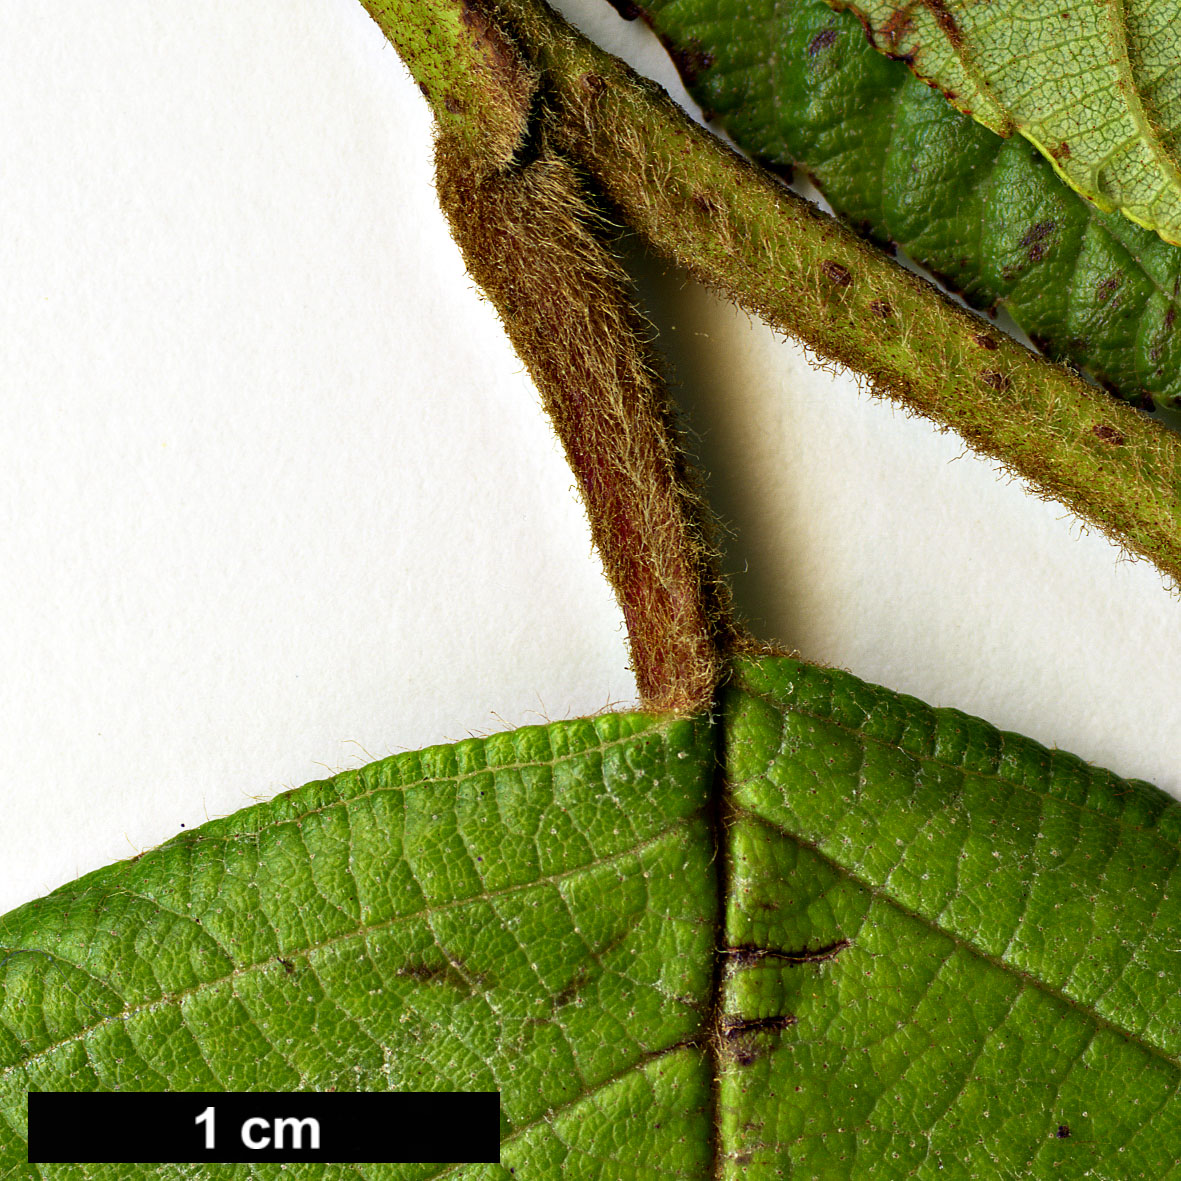 High resolution image: Family: Betulaceae - Genus: Alnus - Taxon: acuminata - SpeciesSub: subsp. acuminata